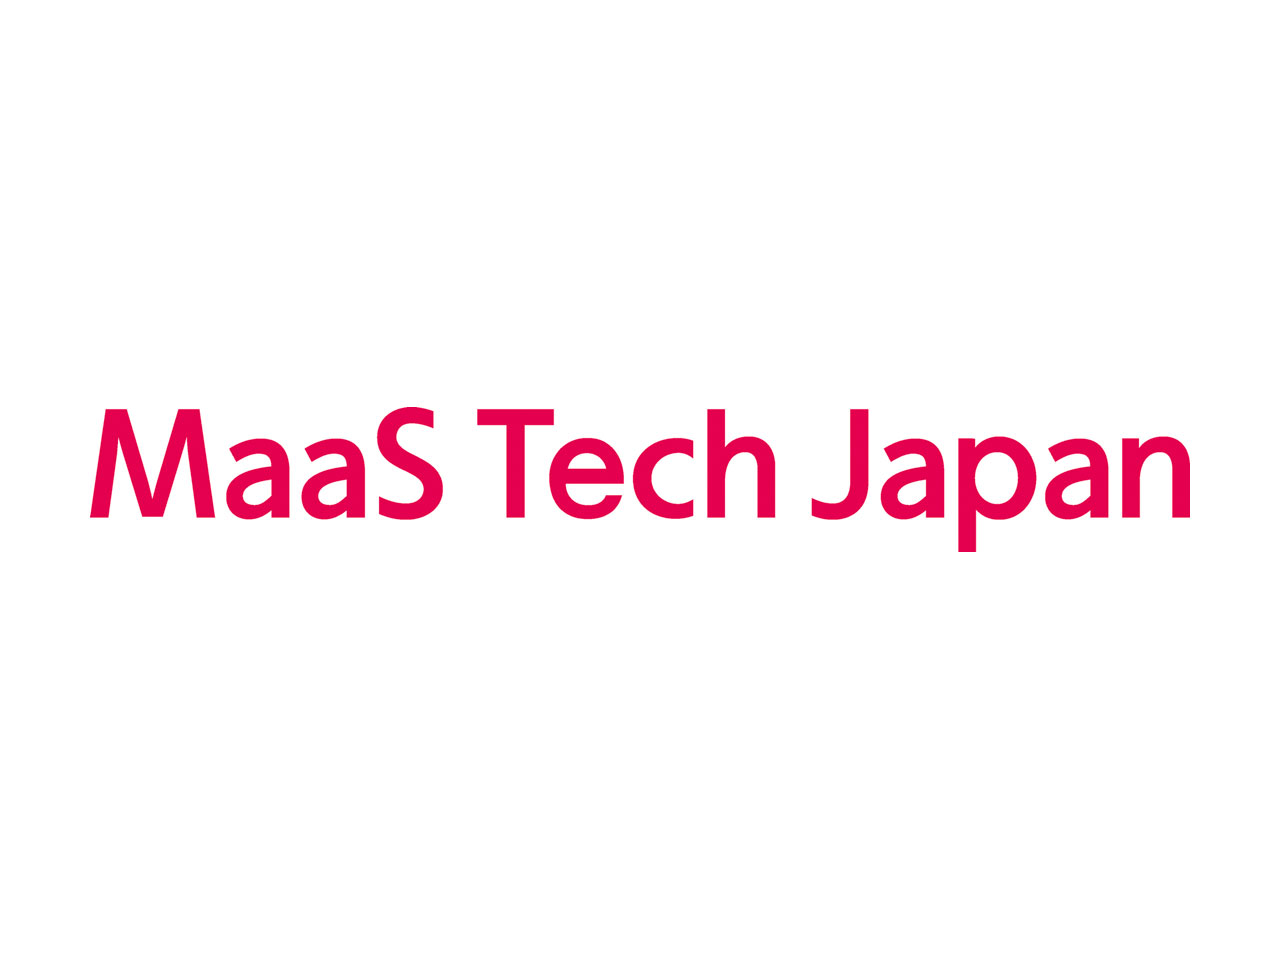 日本におけるMaaSのモデル構築およびMaaSを活用したプロダクトの開発に向けて、2018年に設立された同社。